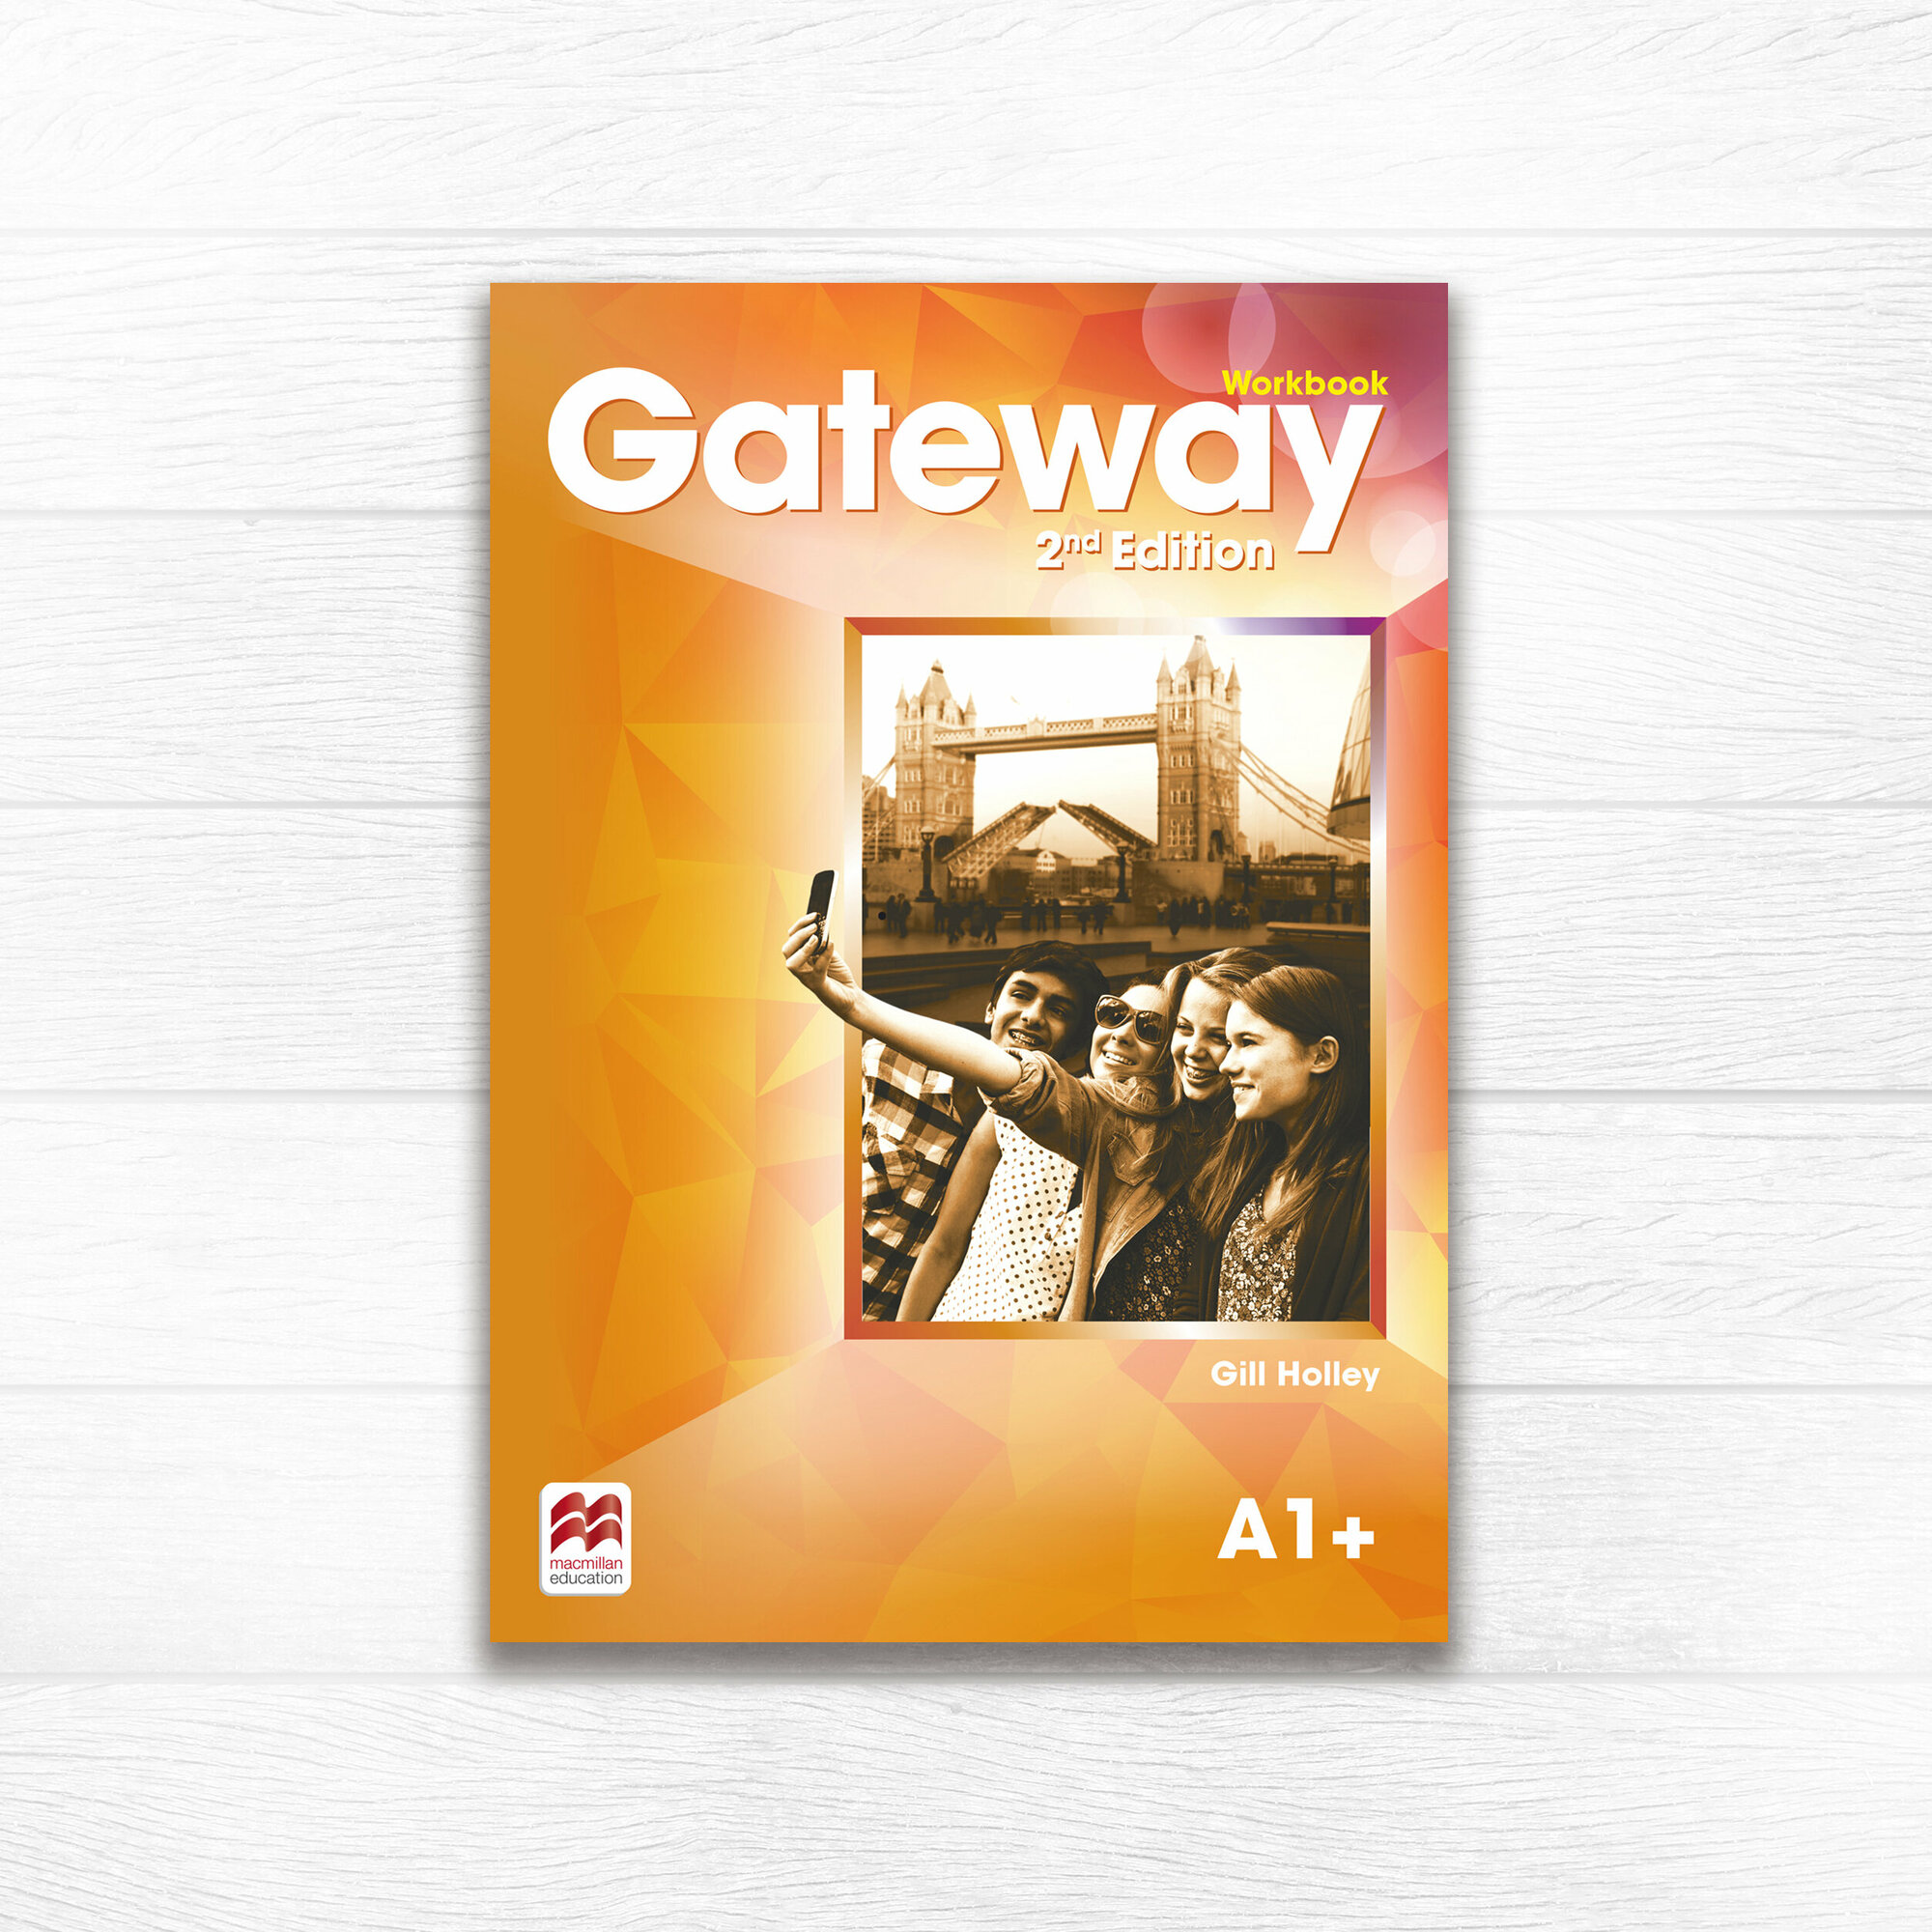 Gateway Second Edition A1+ Workbook, рабочая тетрадь по англискому языку для подростков